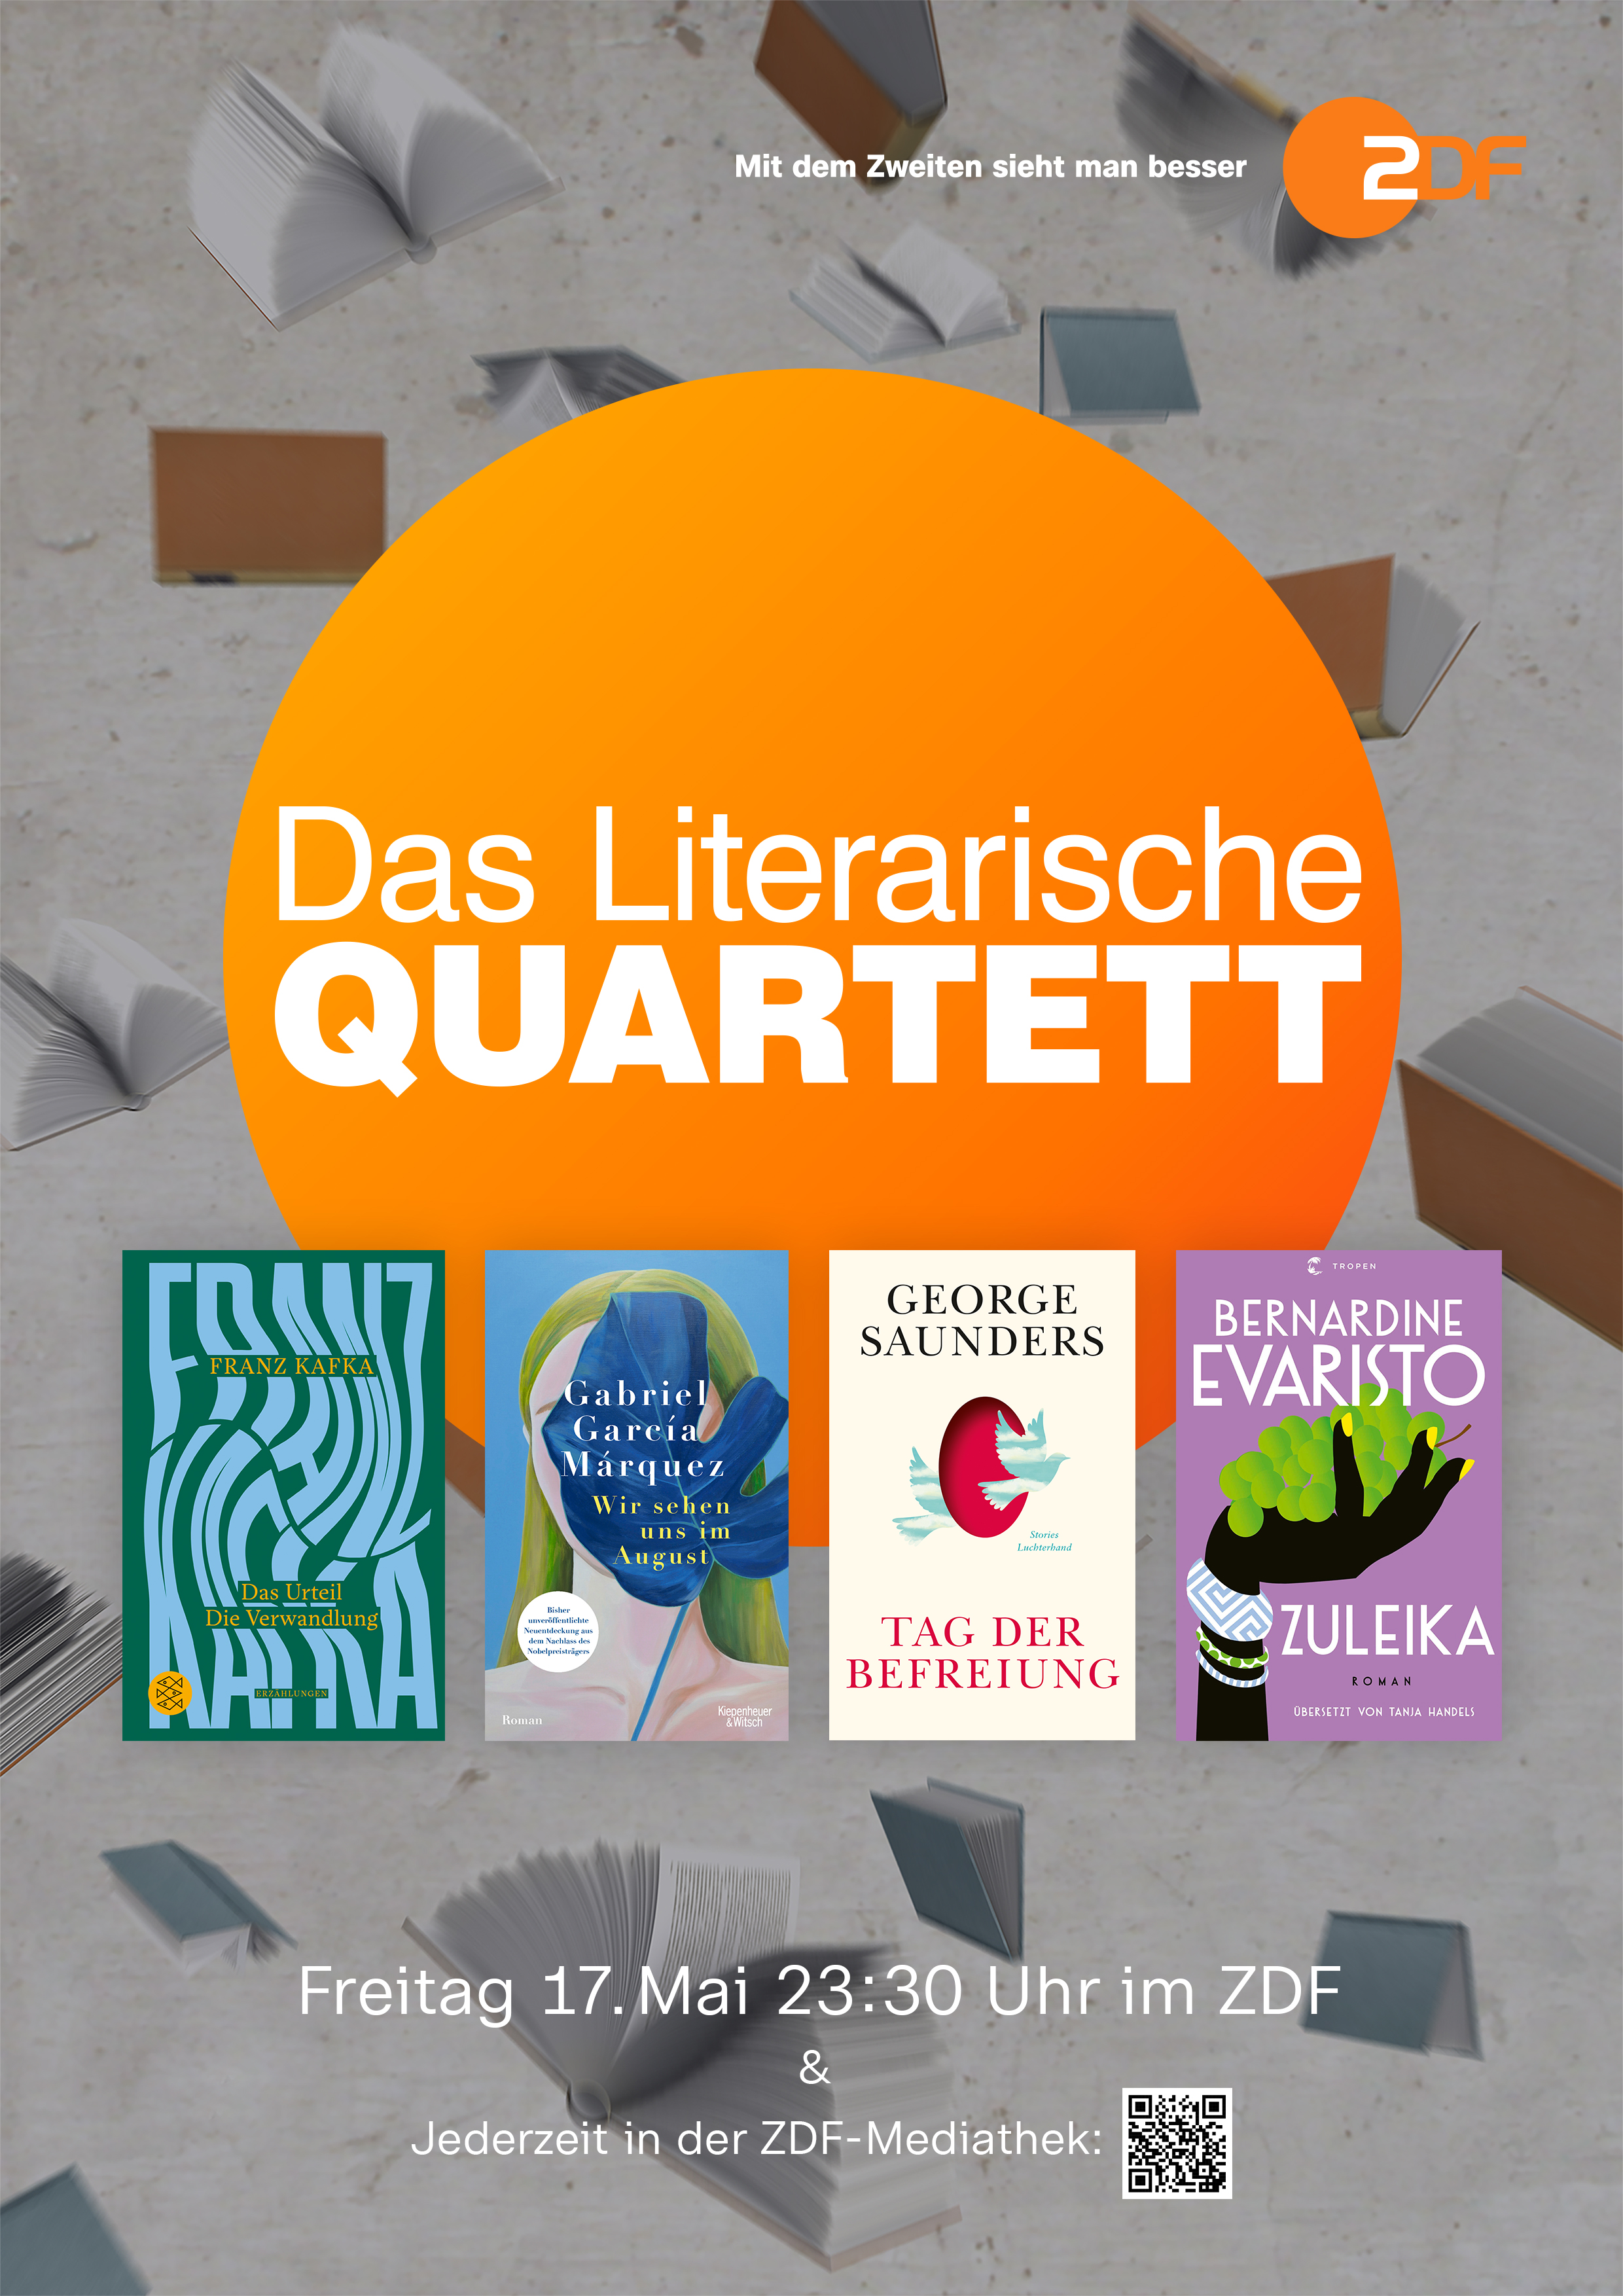 Das Literarische Quartett